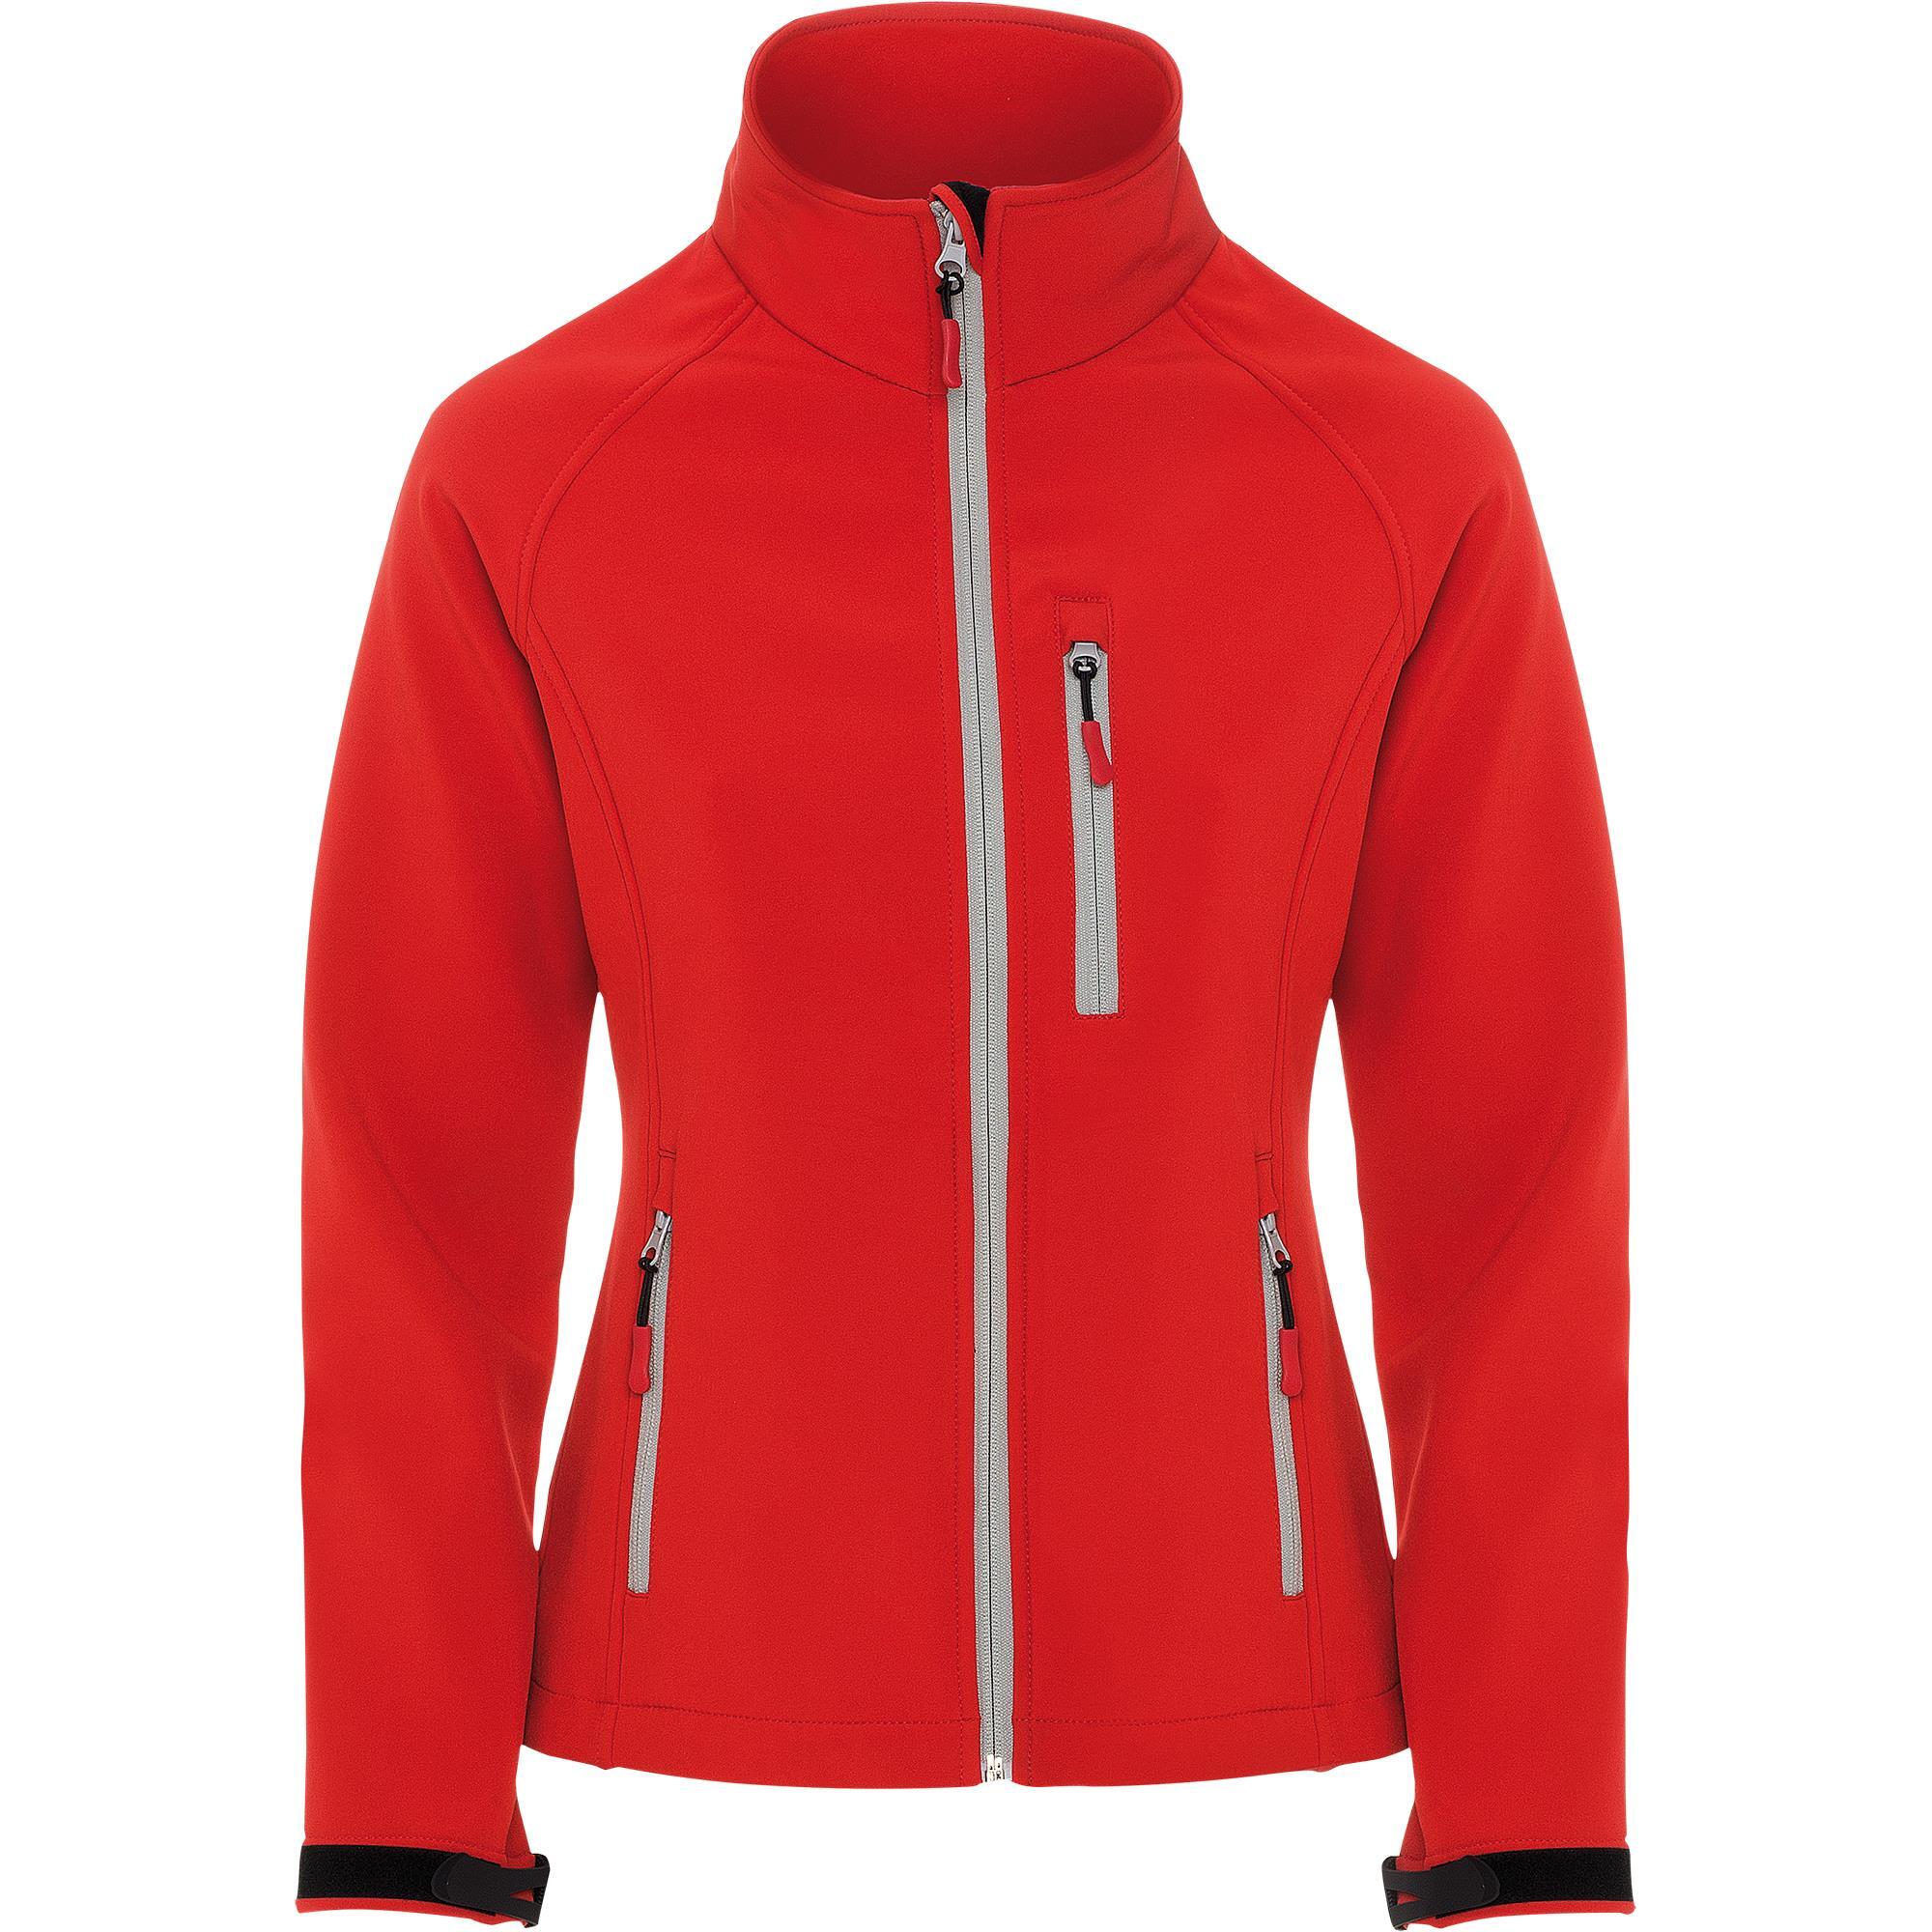 Softshell jas voor dames rood bedrukken personalisatie